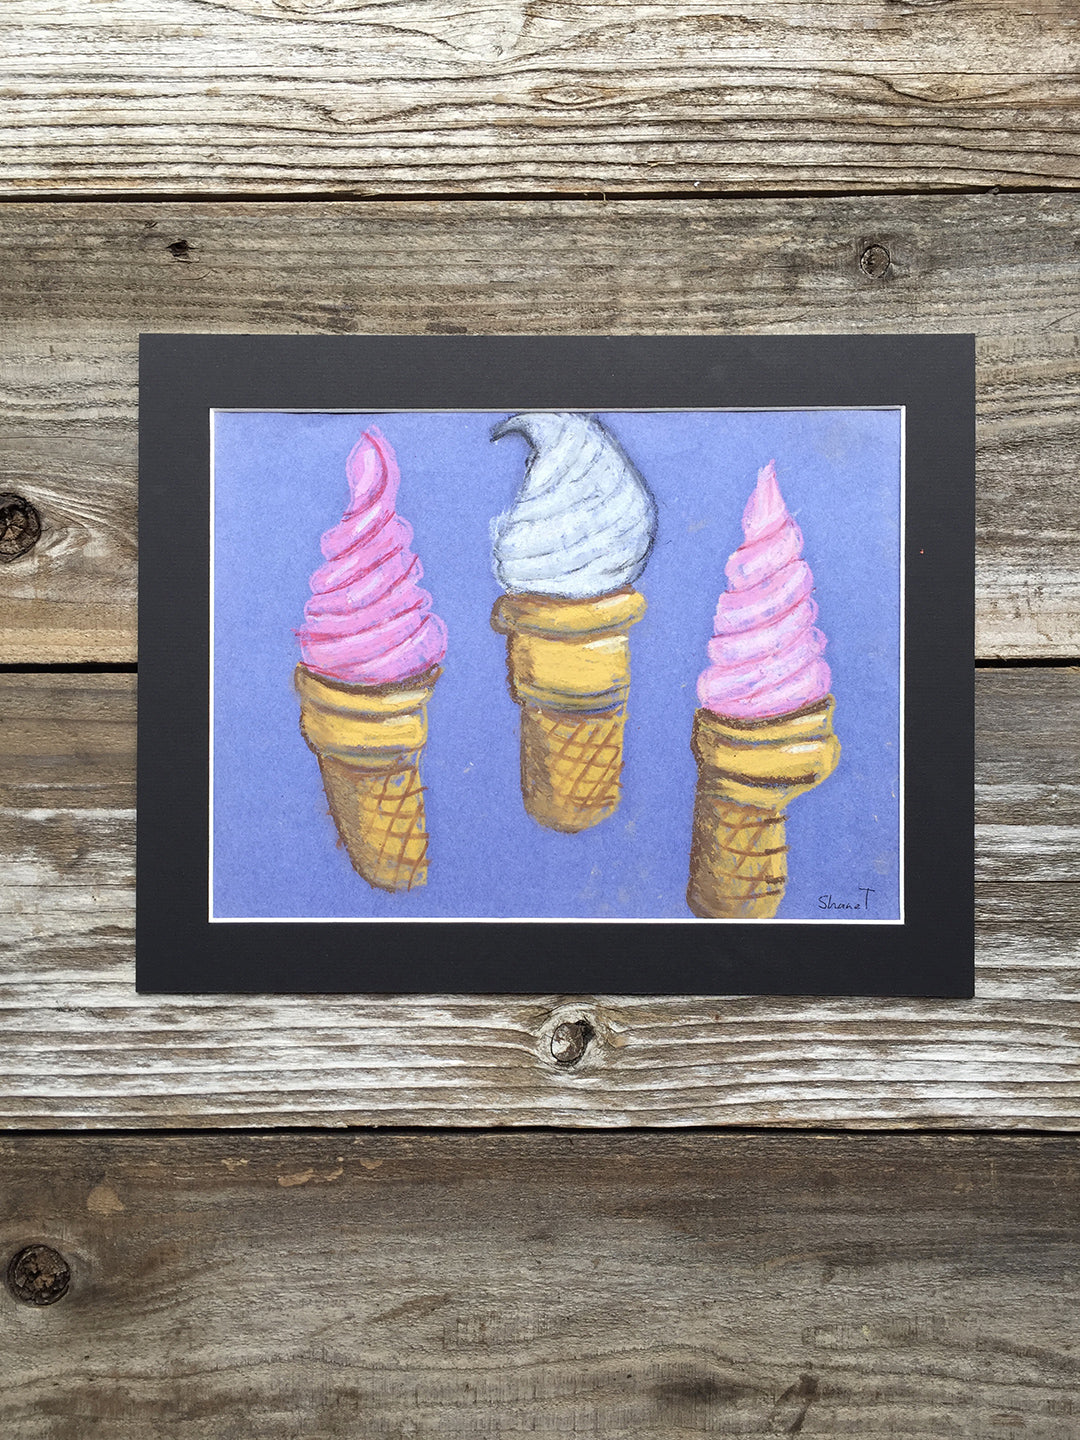 Ice-cream Cones